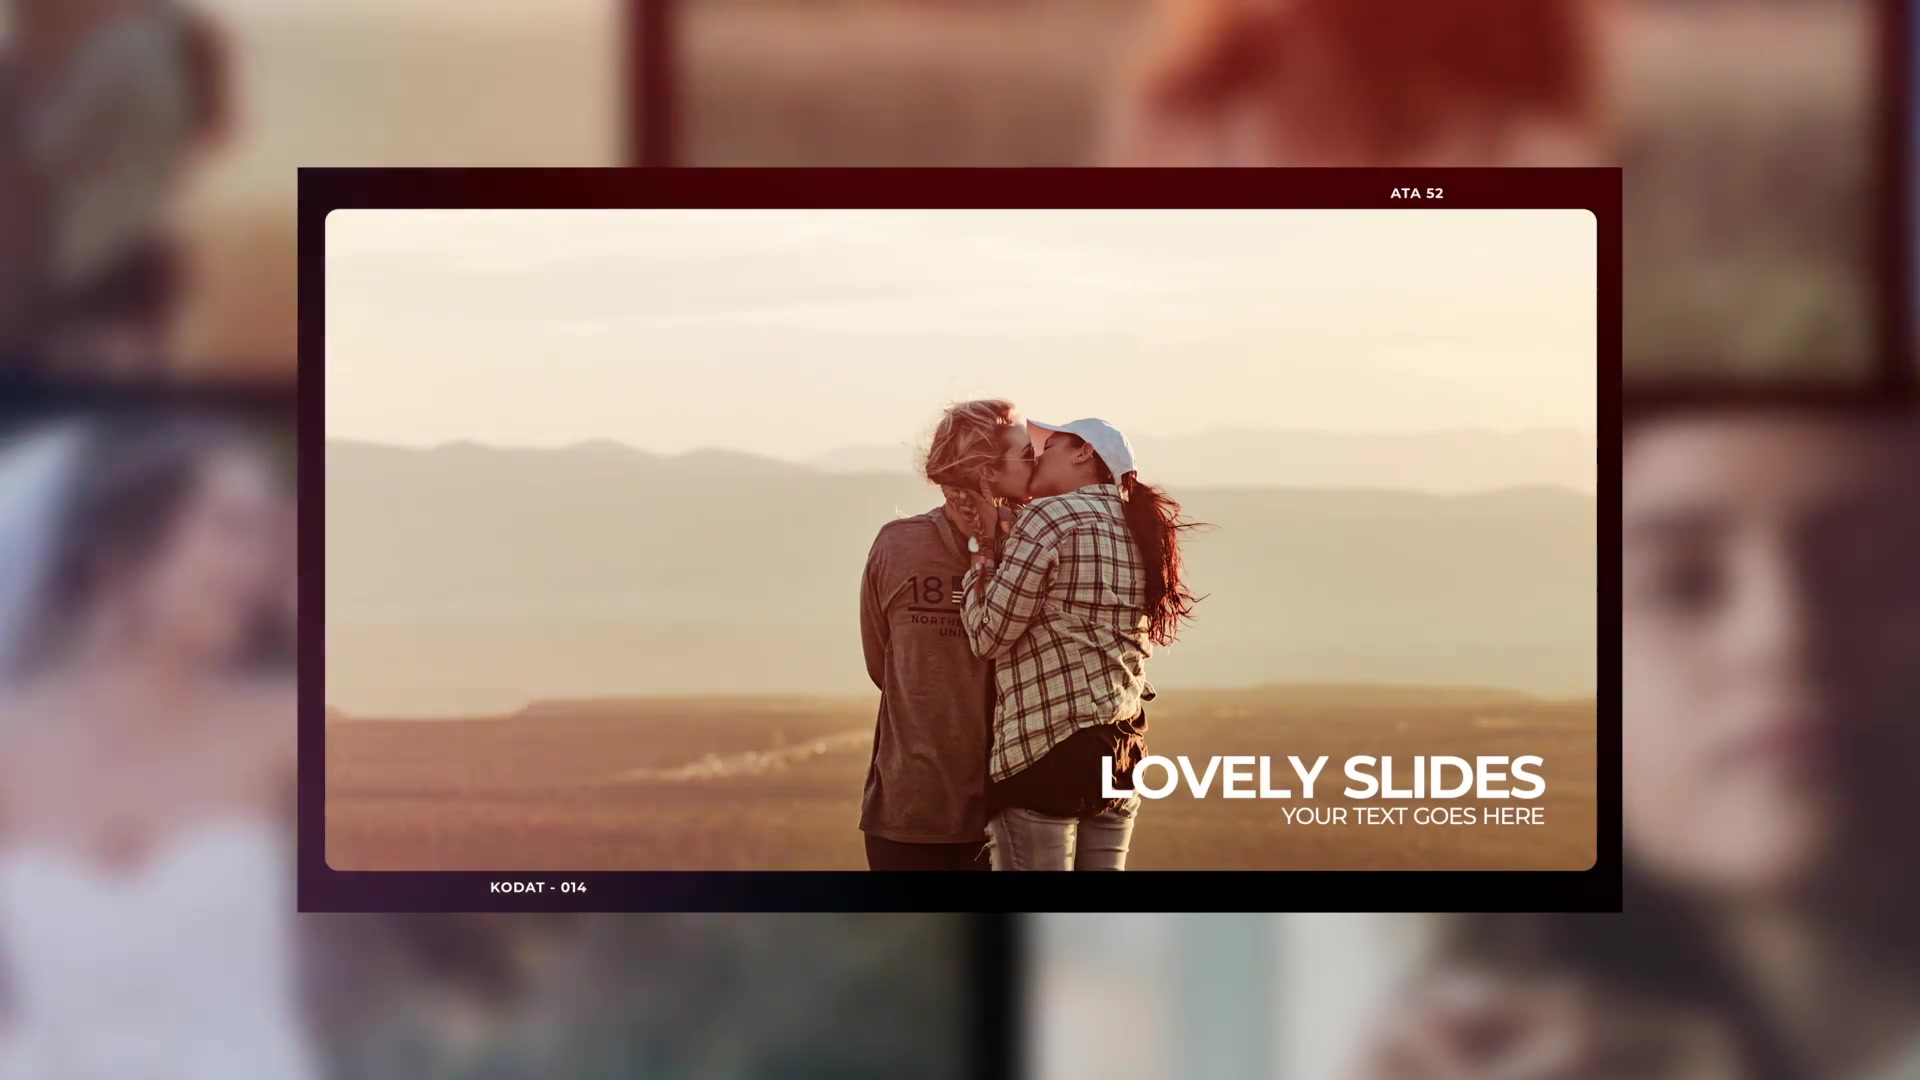 Lovely Slides | DR Videohive 37675512 DaVinci Resolve Image 11